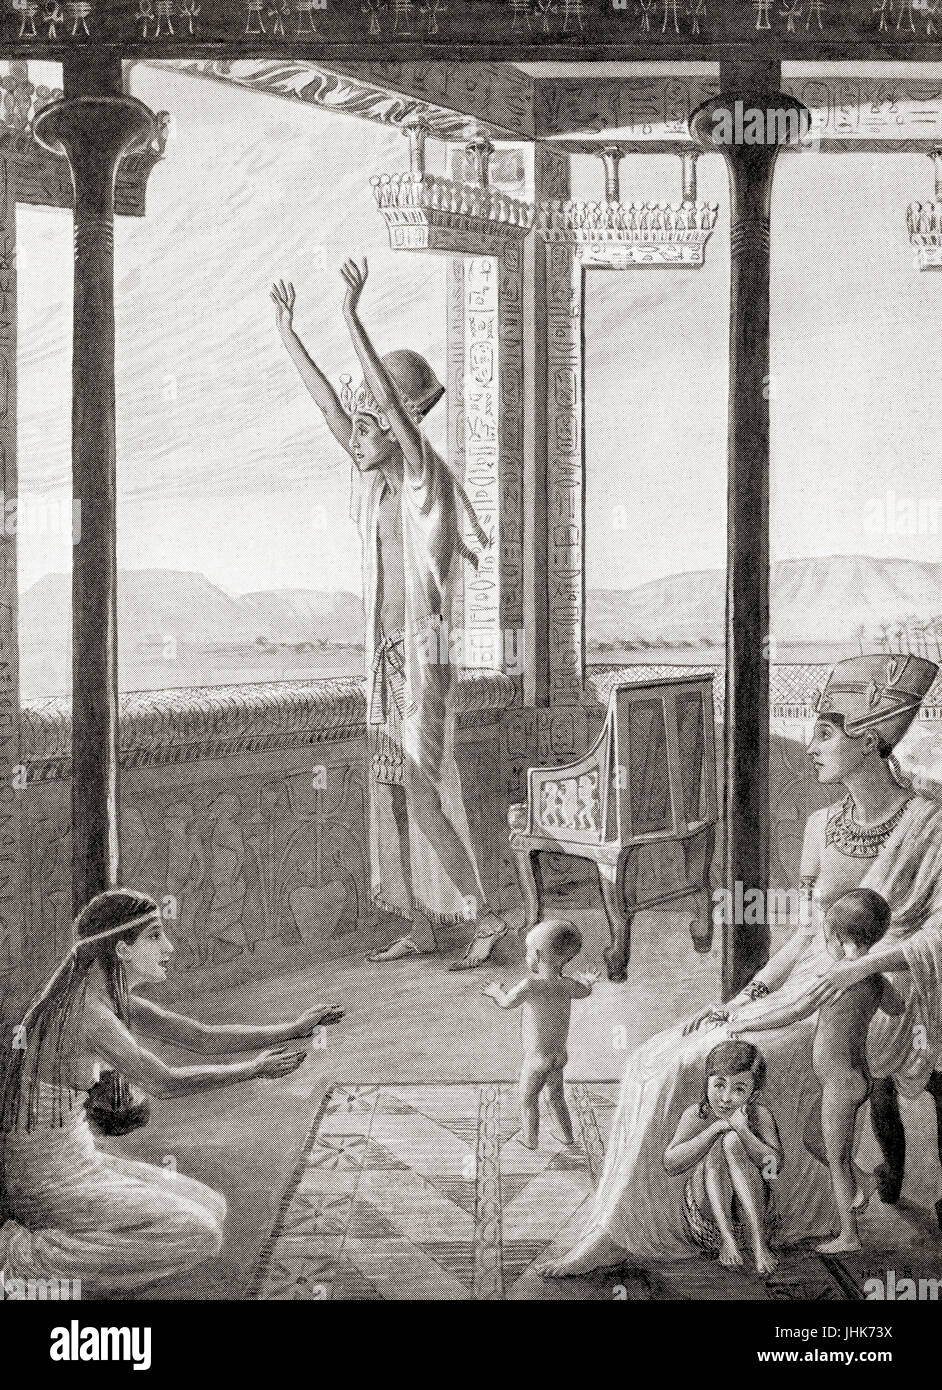 Akhénaton et sa famille adorant l'Aton ou Aton, le disque du soleil dans la mythologie de l'Égypte ancienne. Akhénaton Echnaton, aussi orthographié, Akhenaton, Ikhnaton et Khuenaten, aka Amenhotep IV. Pharaon égyptien de la xviiie dynastie. Il est particulièrement indiqué pour l'abandon de la religion égyptienne traditionnelle et l'introduction du culte centré sur l'ATON. Après la peinture de W.M.N. Brunton (1880-1959). L'histoire de Hutchinson de l'ONU, publié en 1915. Banque D'Images